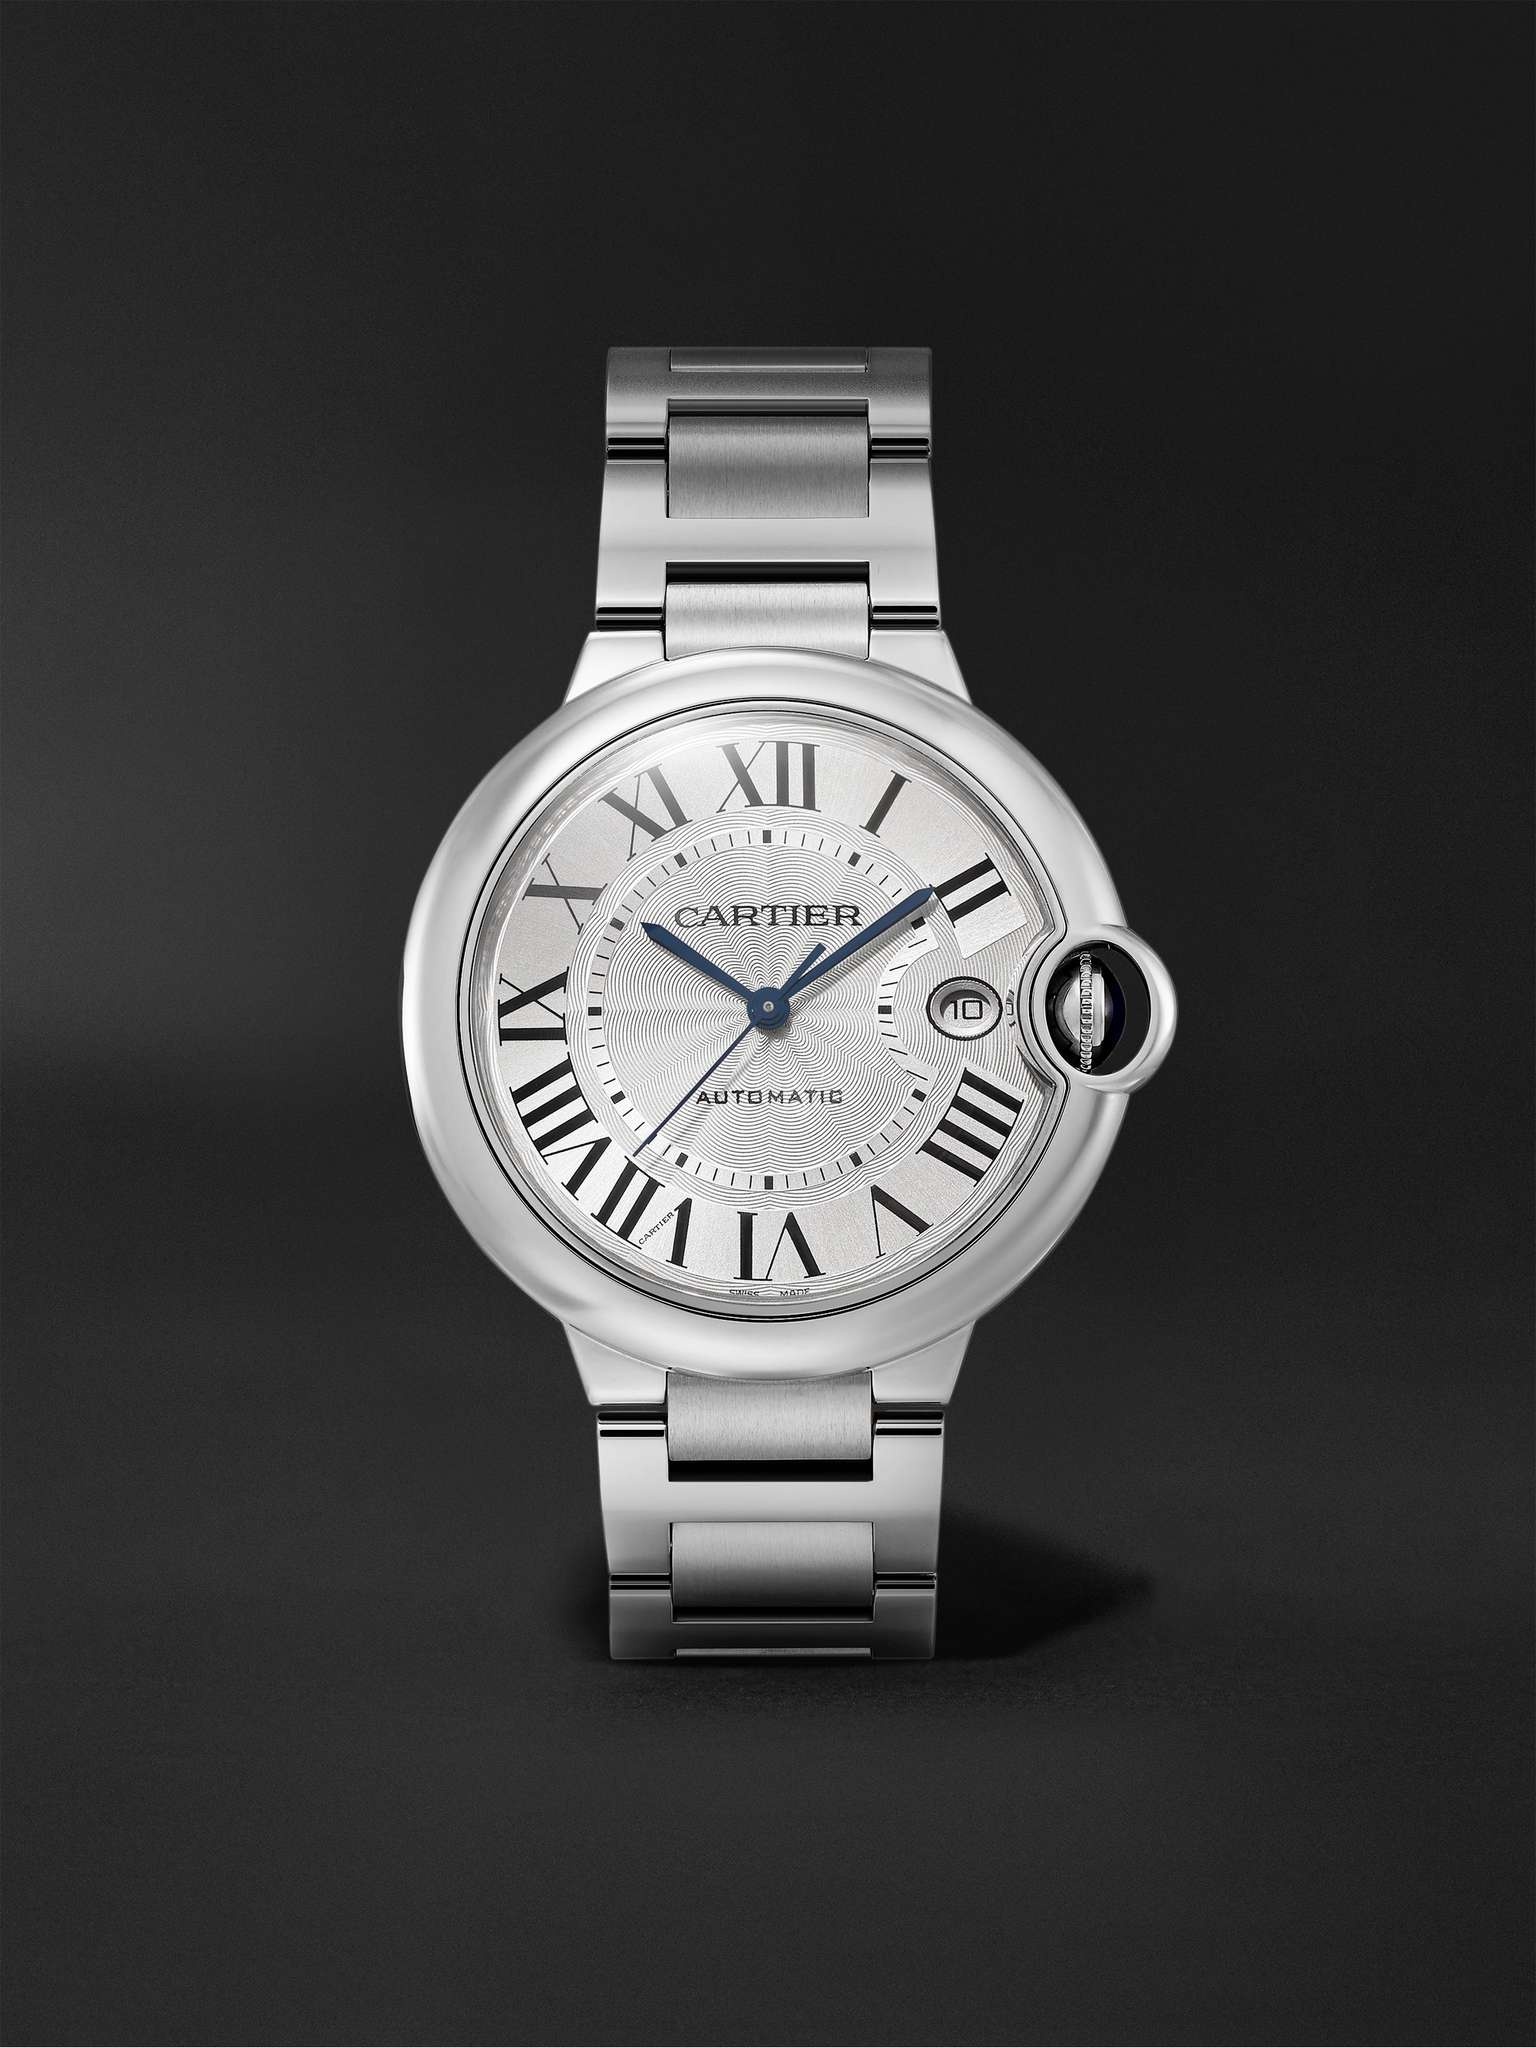 Ballon Bleu de Cartier Automatic 40mm Stainless Steel Watch, Ref. No. WSBB0040 - 1